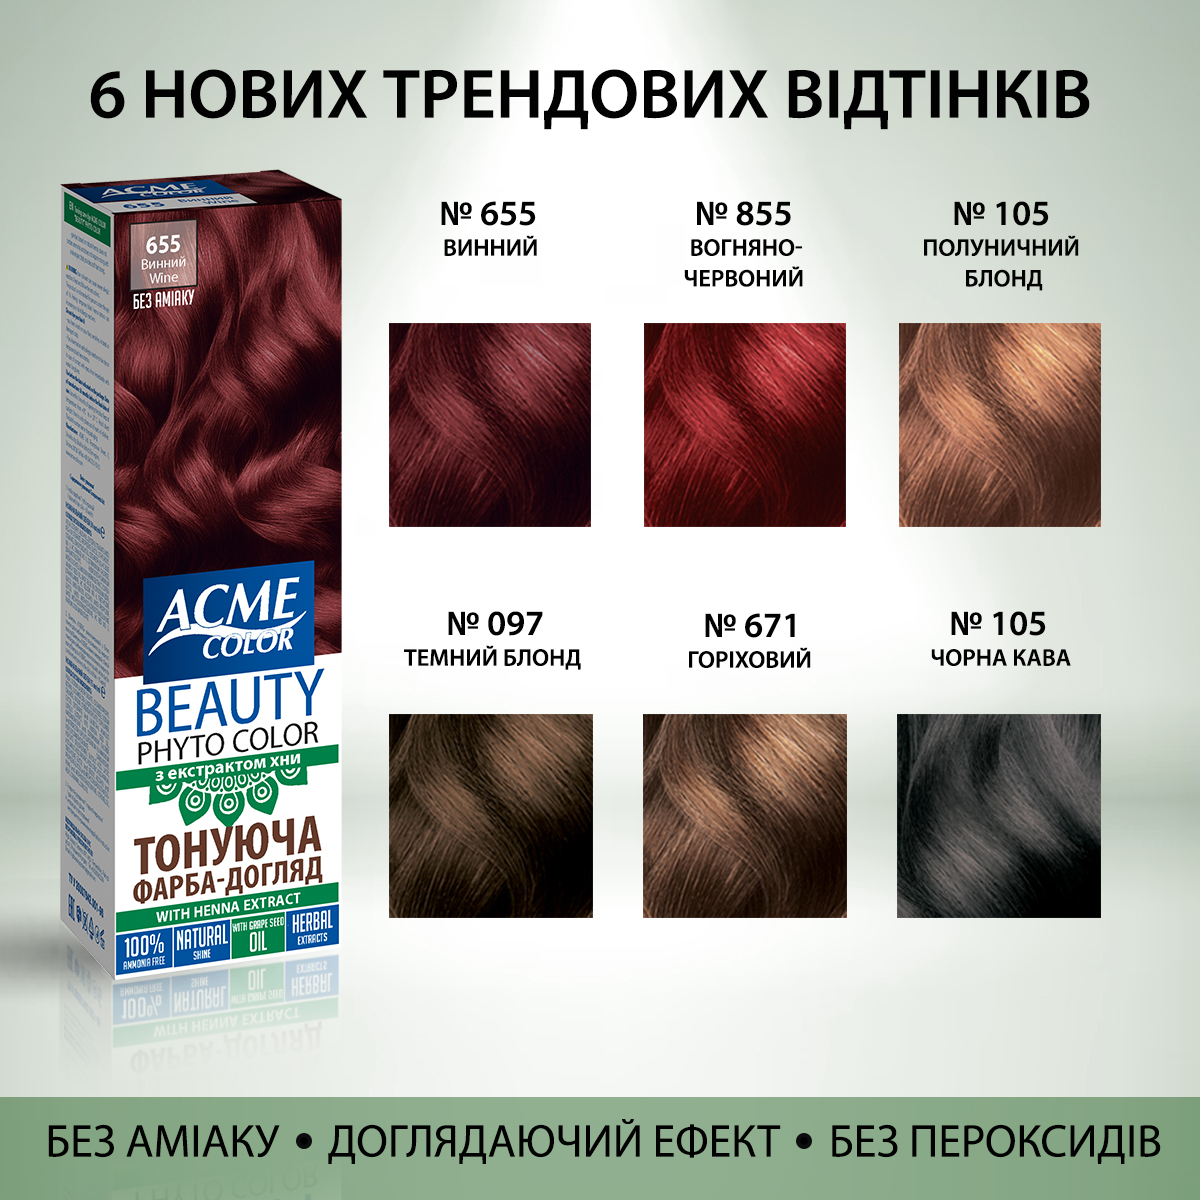 Гель-фарба Acme Color Beauty Phyto Color, відтінок 855, вогняно-червоний, 60 мл - фото 6